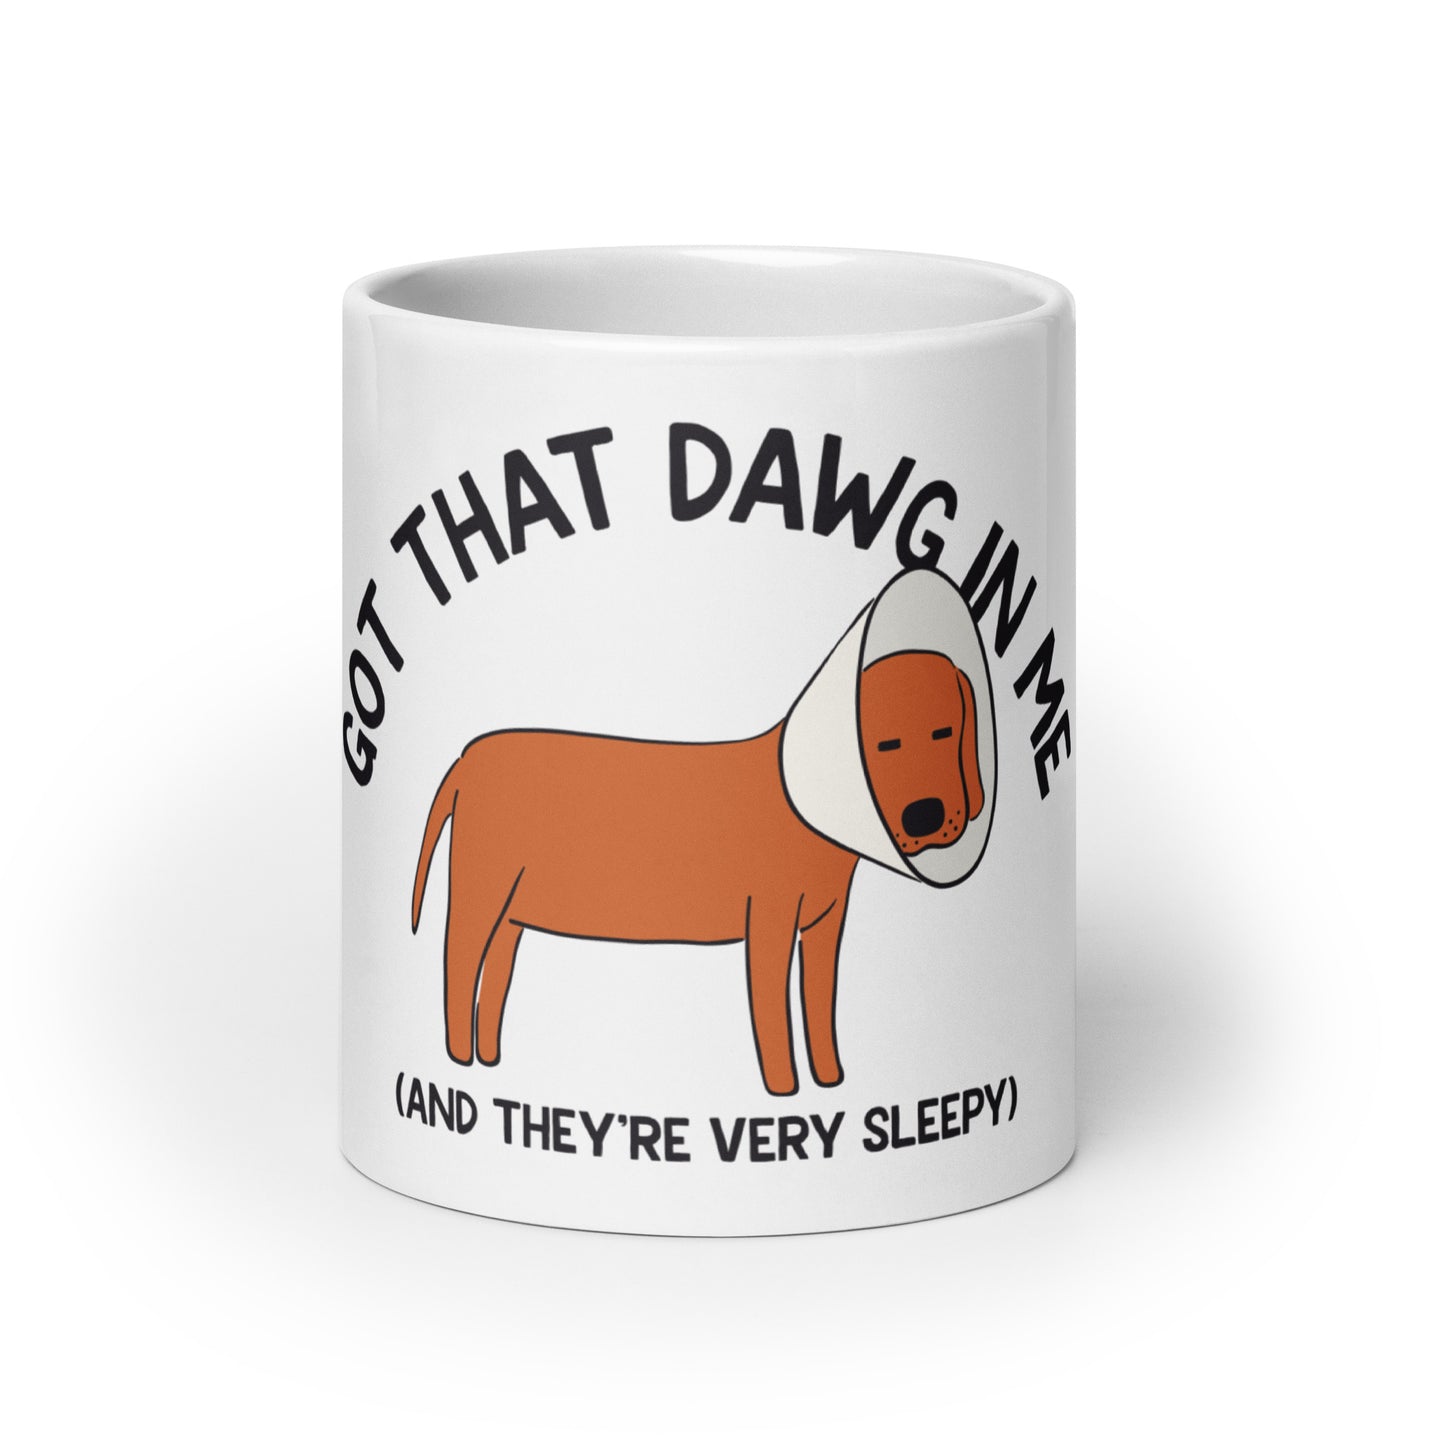 Got That Dawg in Me (Sleepy) mug